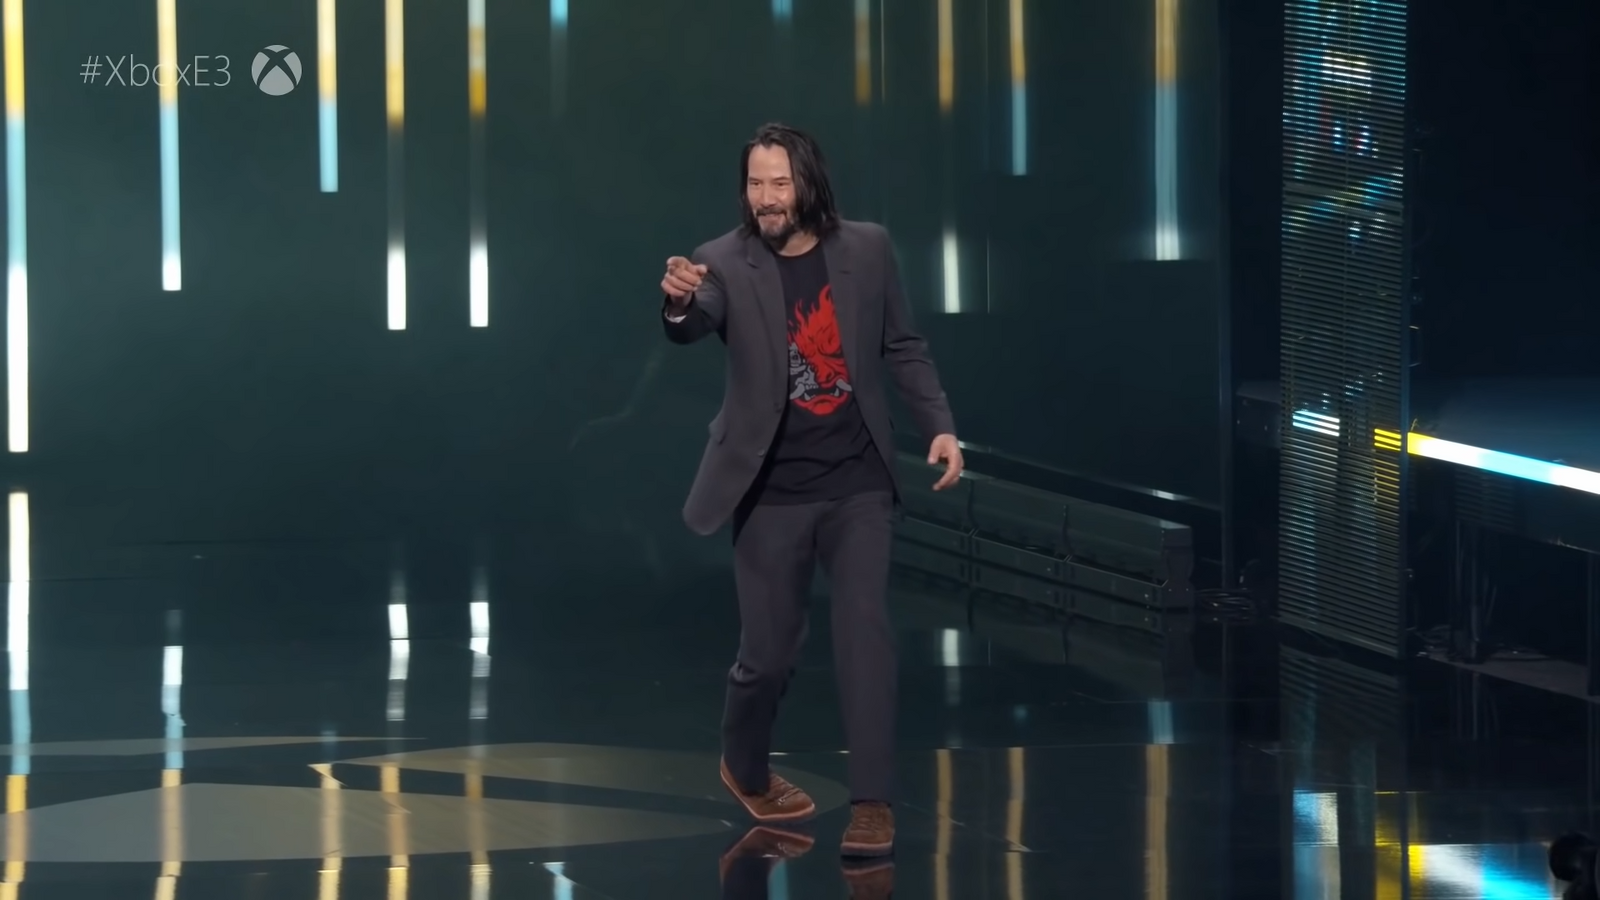 Keanu Reeves at E3 2019 Cyberpunk 2077